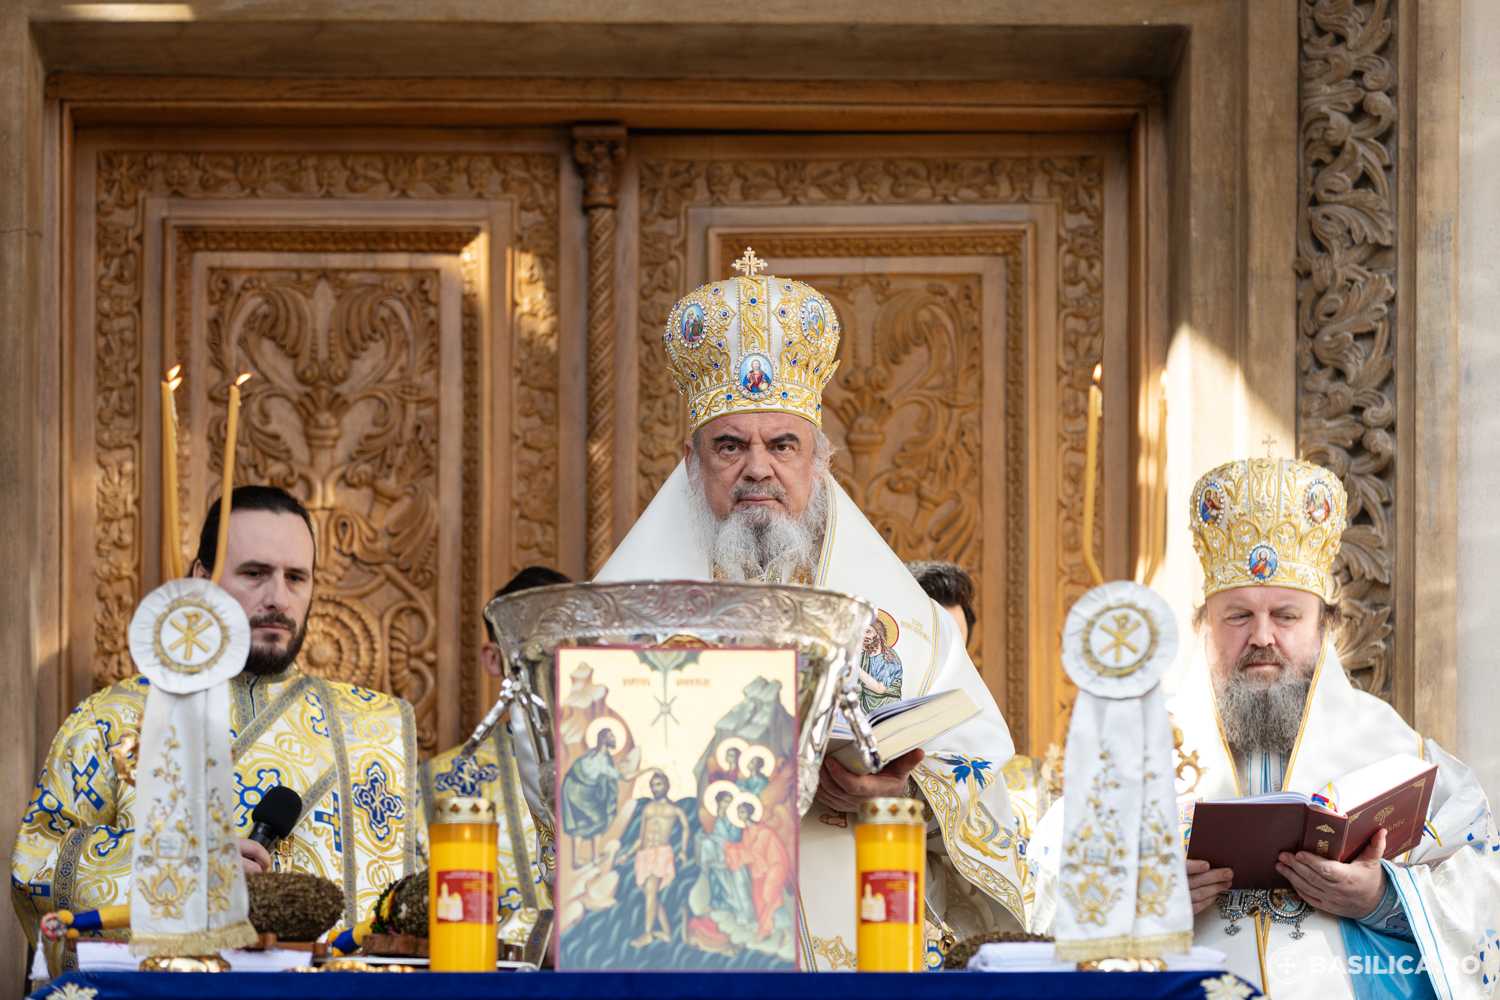 Biserica Ortodoxă Română se implică în campania de vaccinare, anunță Ministerul Sănătății